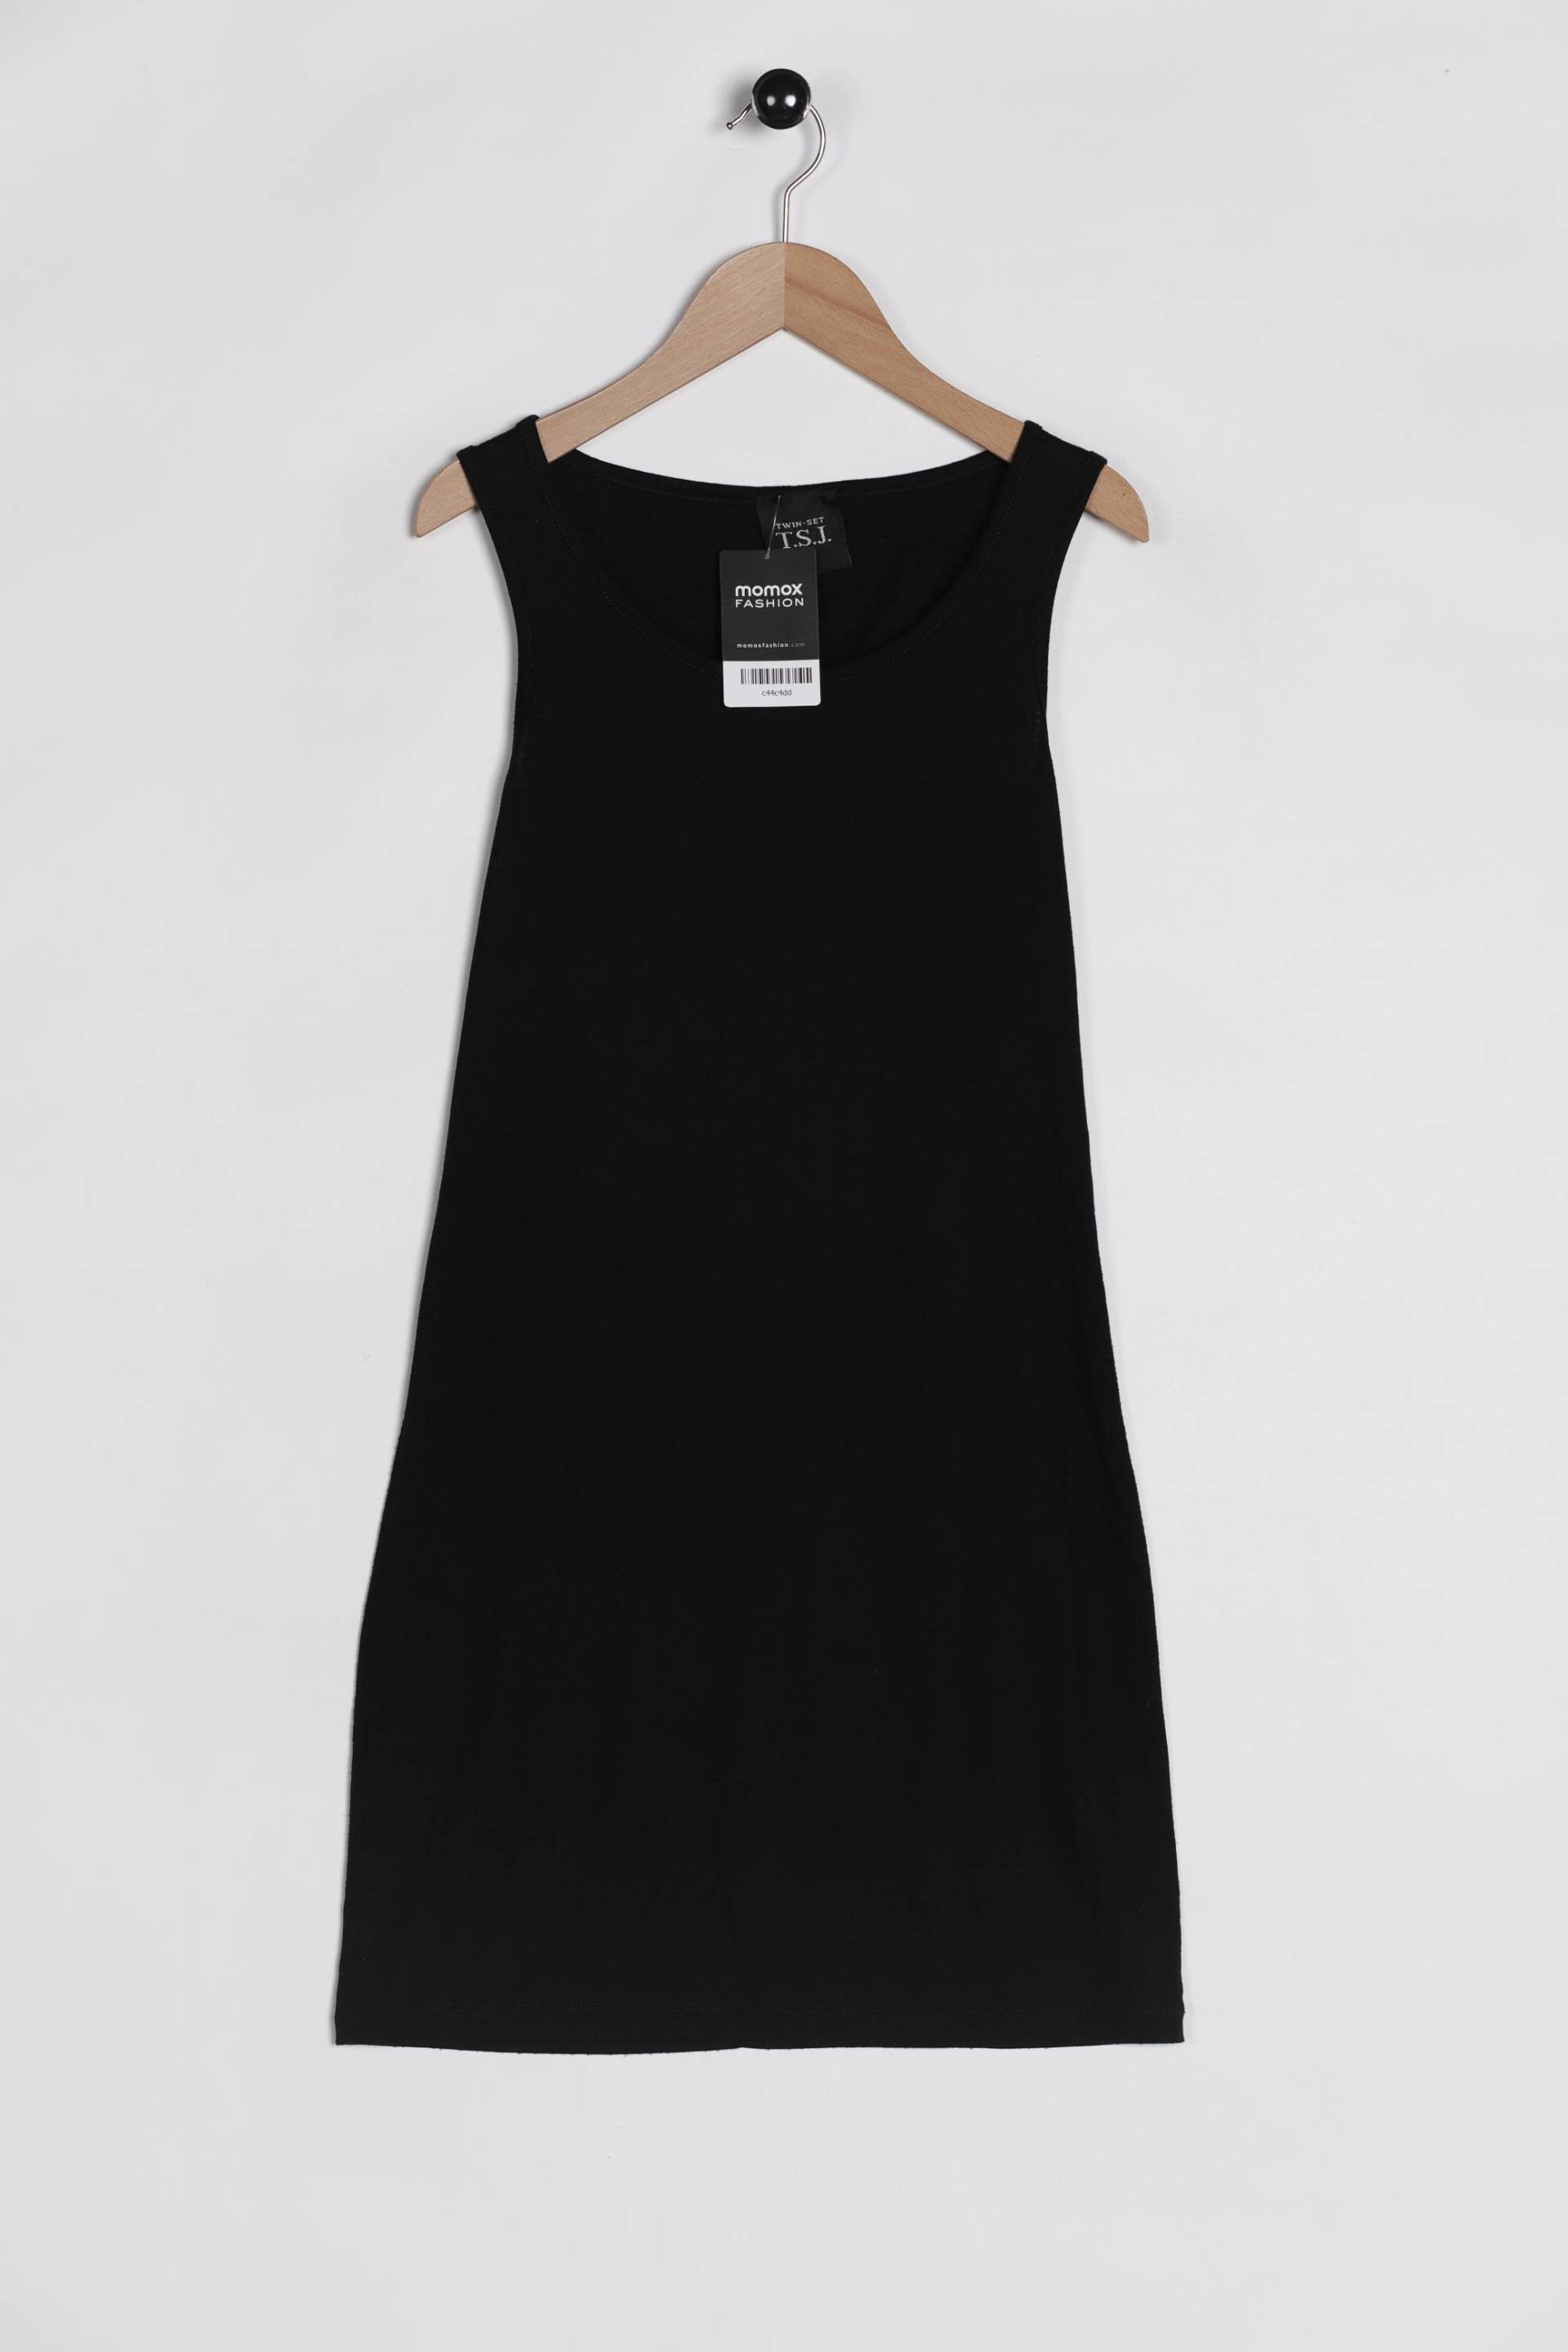 TWINSET Damen Kleid, schwarz von TWINSET